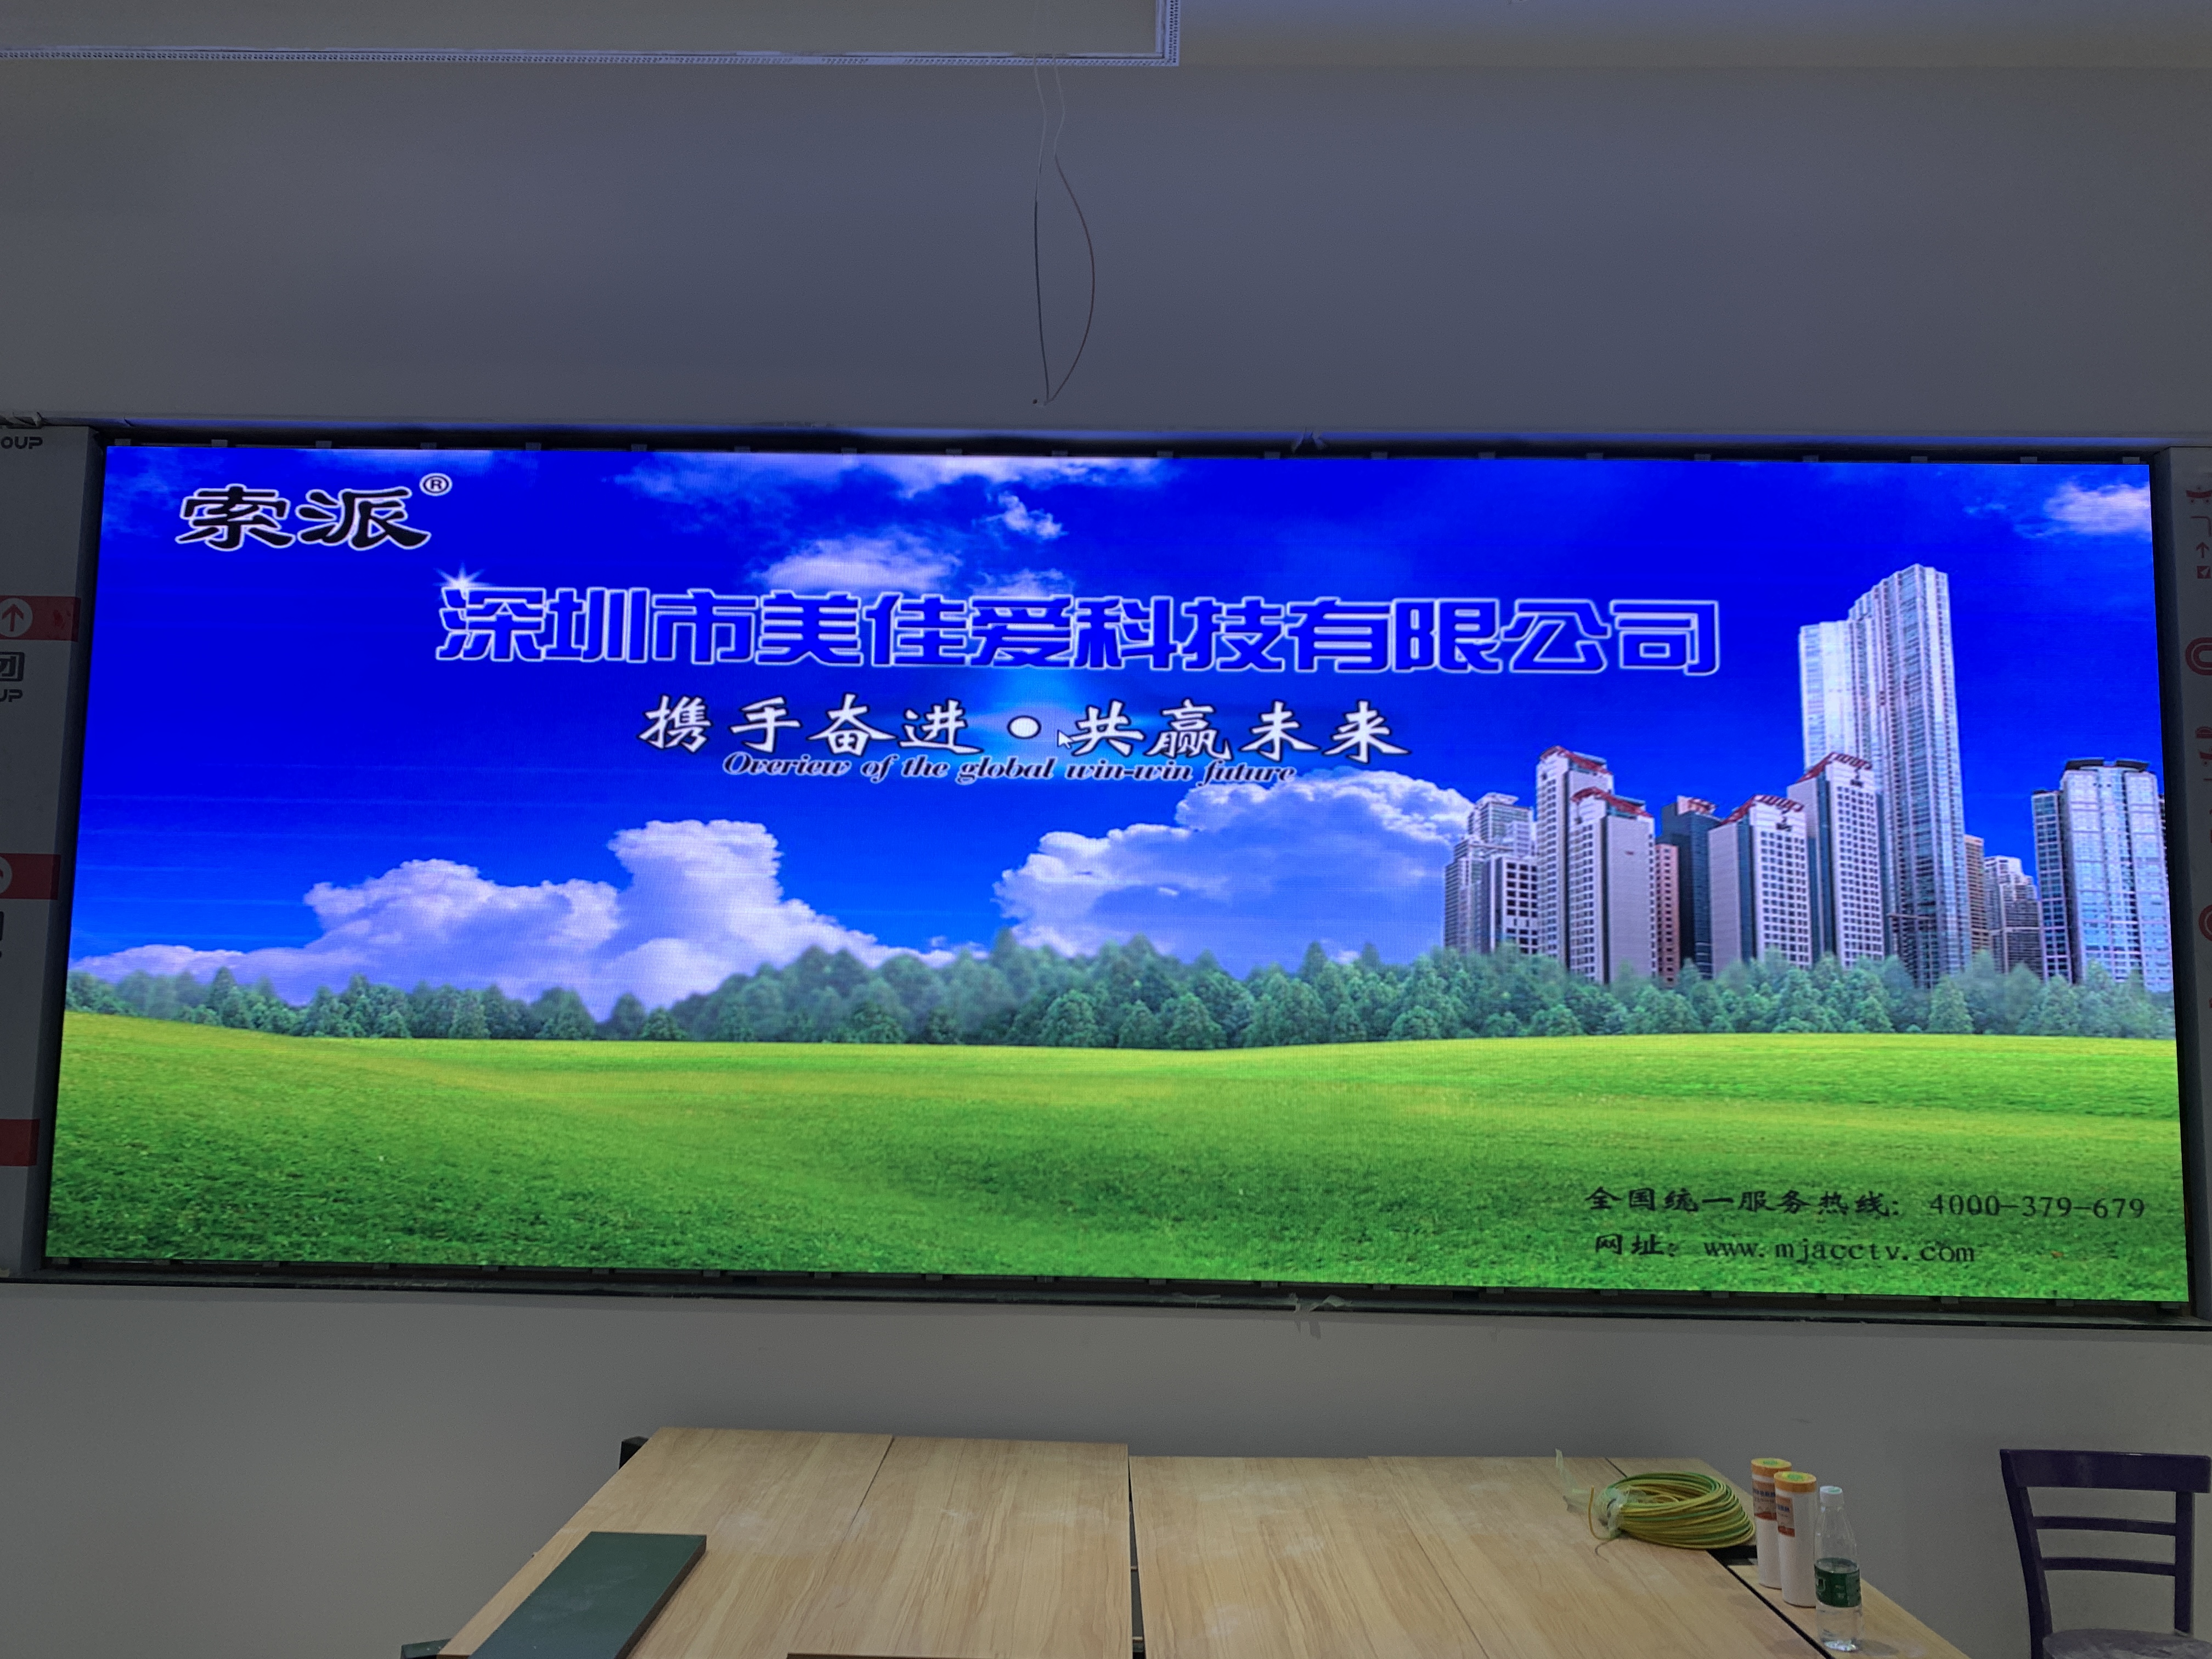  广东全彩LED显示屏安装项目